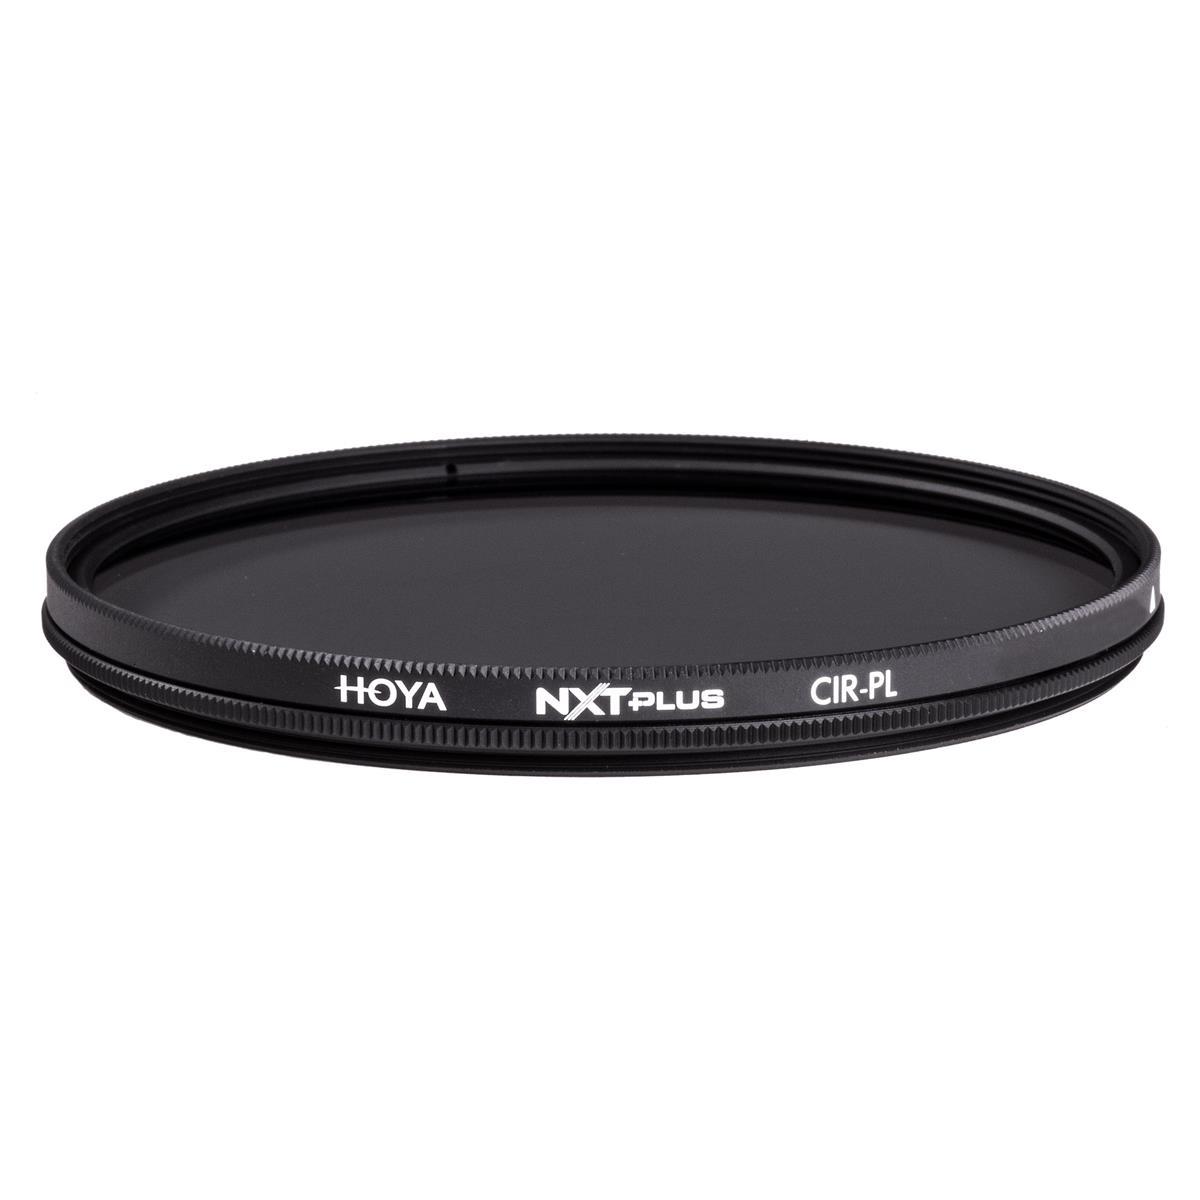 Sony FE 50mm f/2.8 Macro Lens for Sony E with Hoya 55mm UV+CPL Filter Kit -  SEL50M28 FK